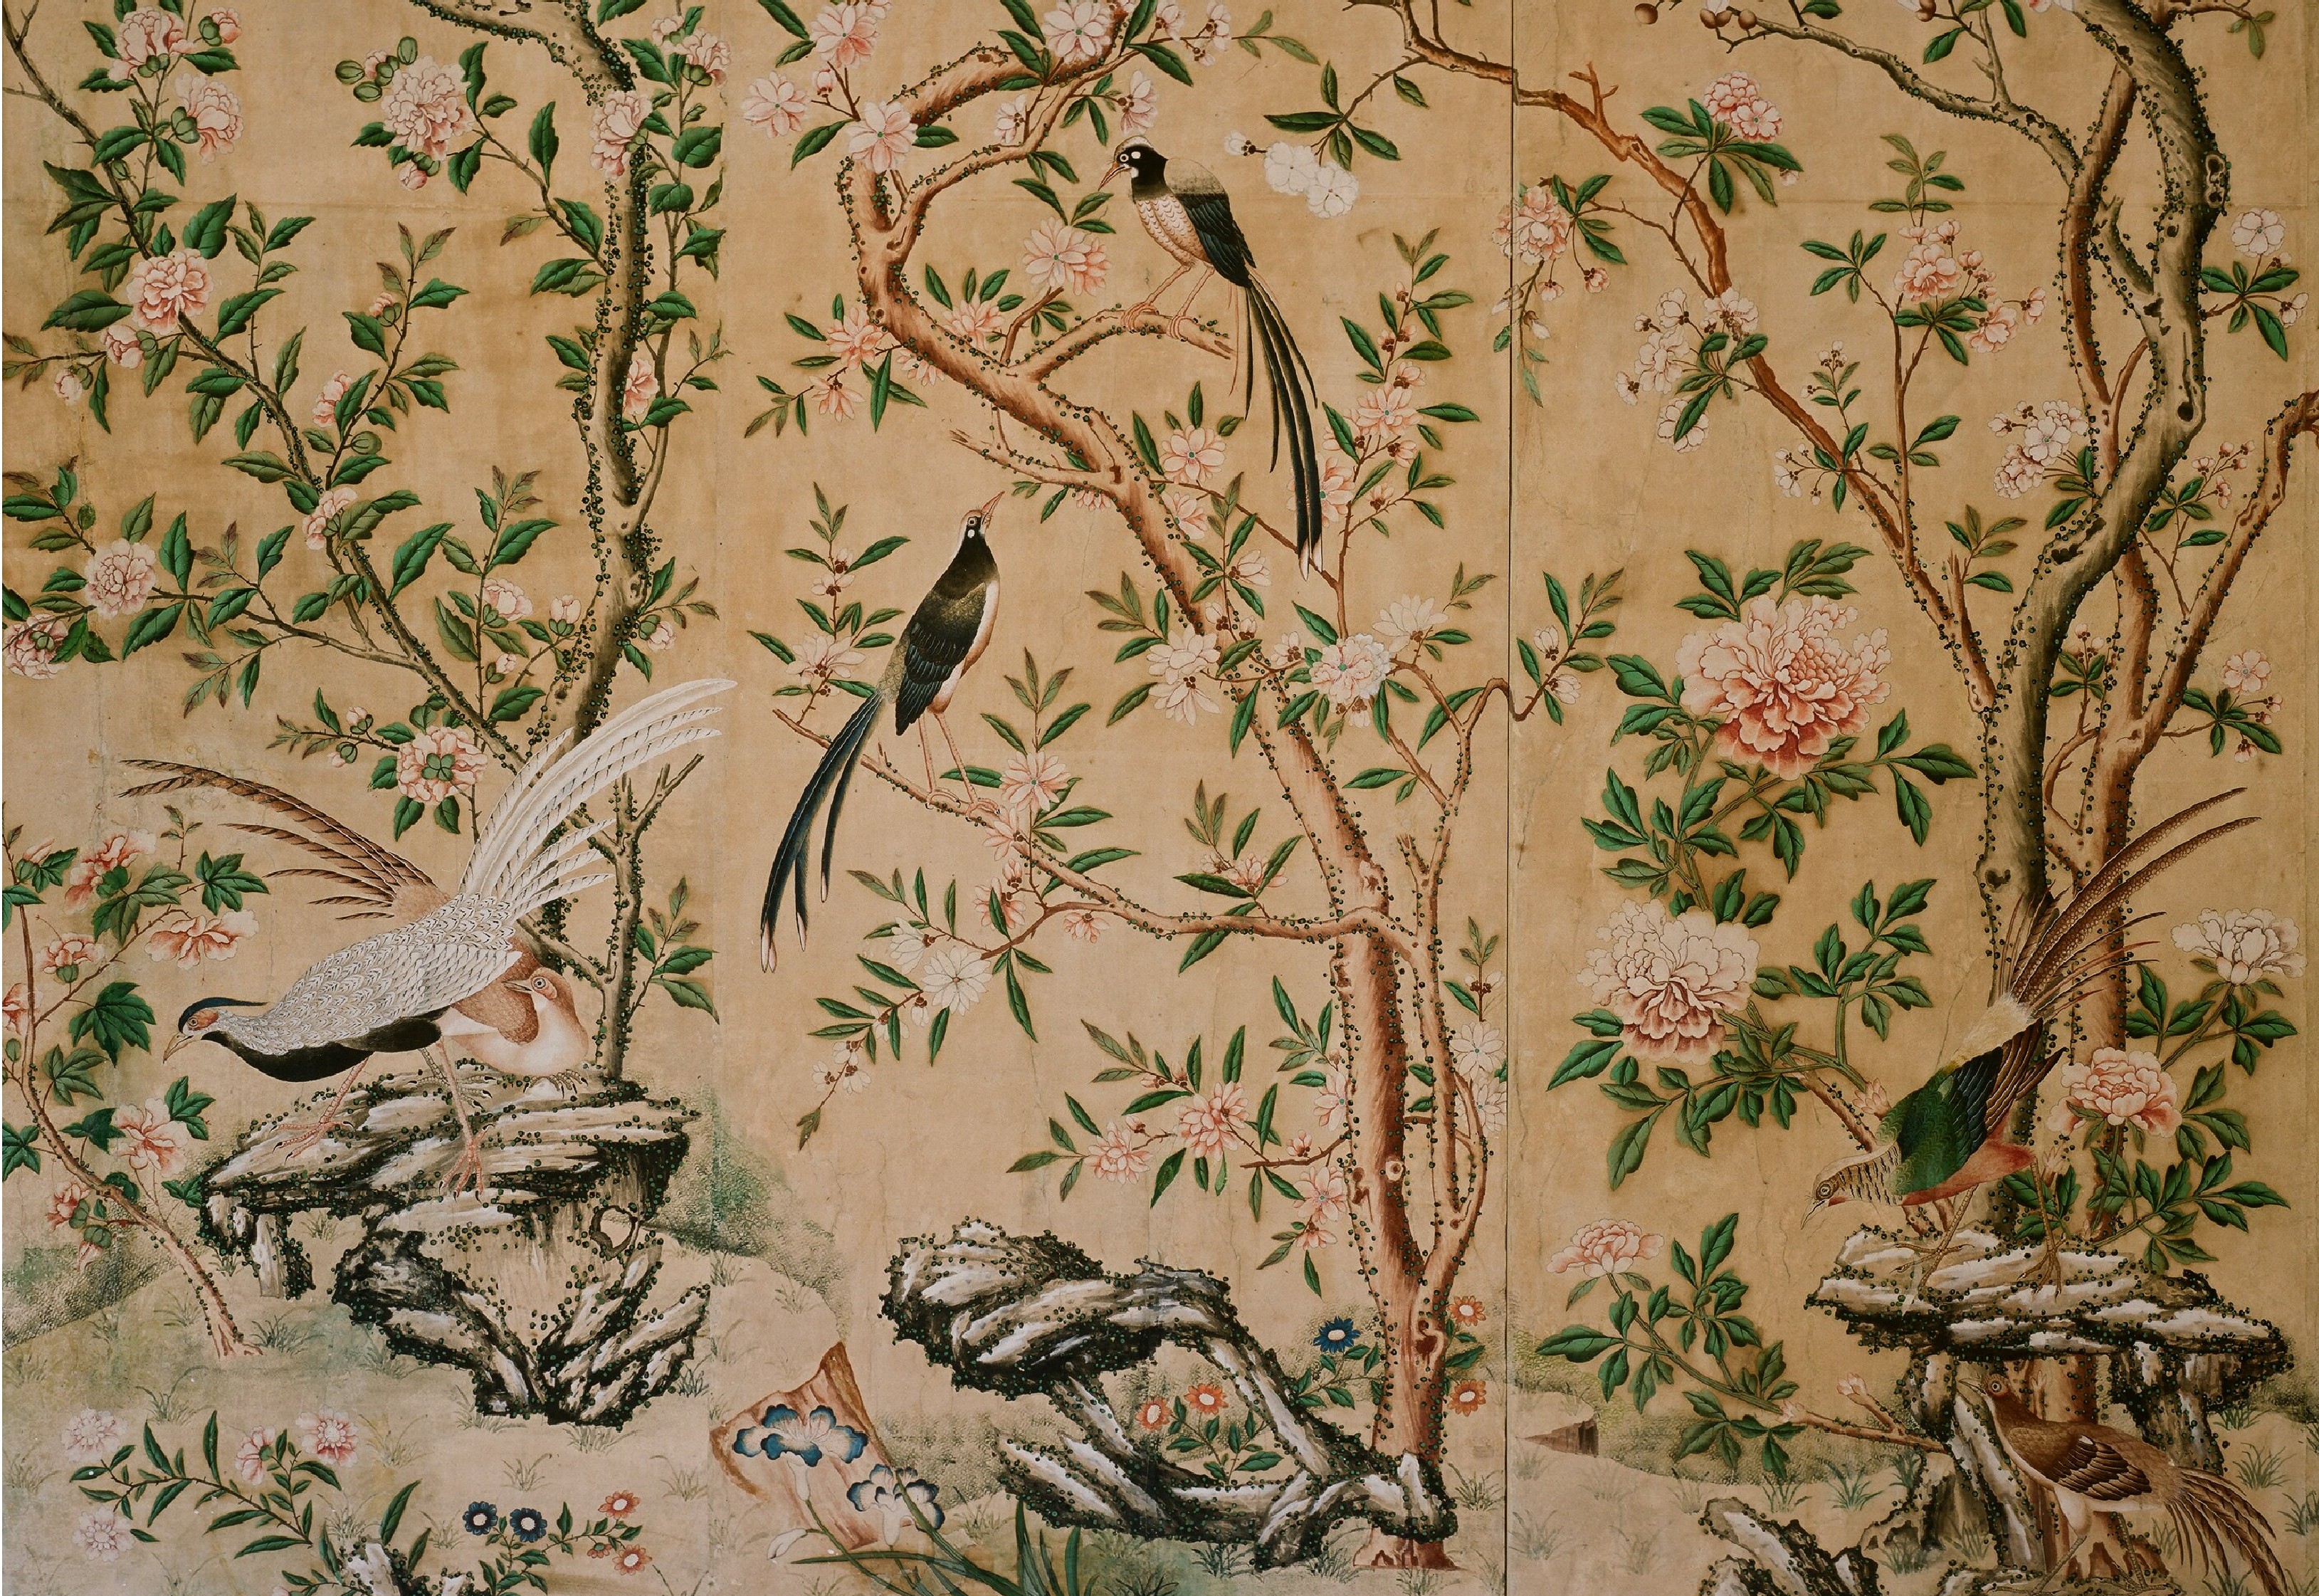 Chinese Wallpaper in Schloss Hellbrunn near Salzburg